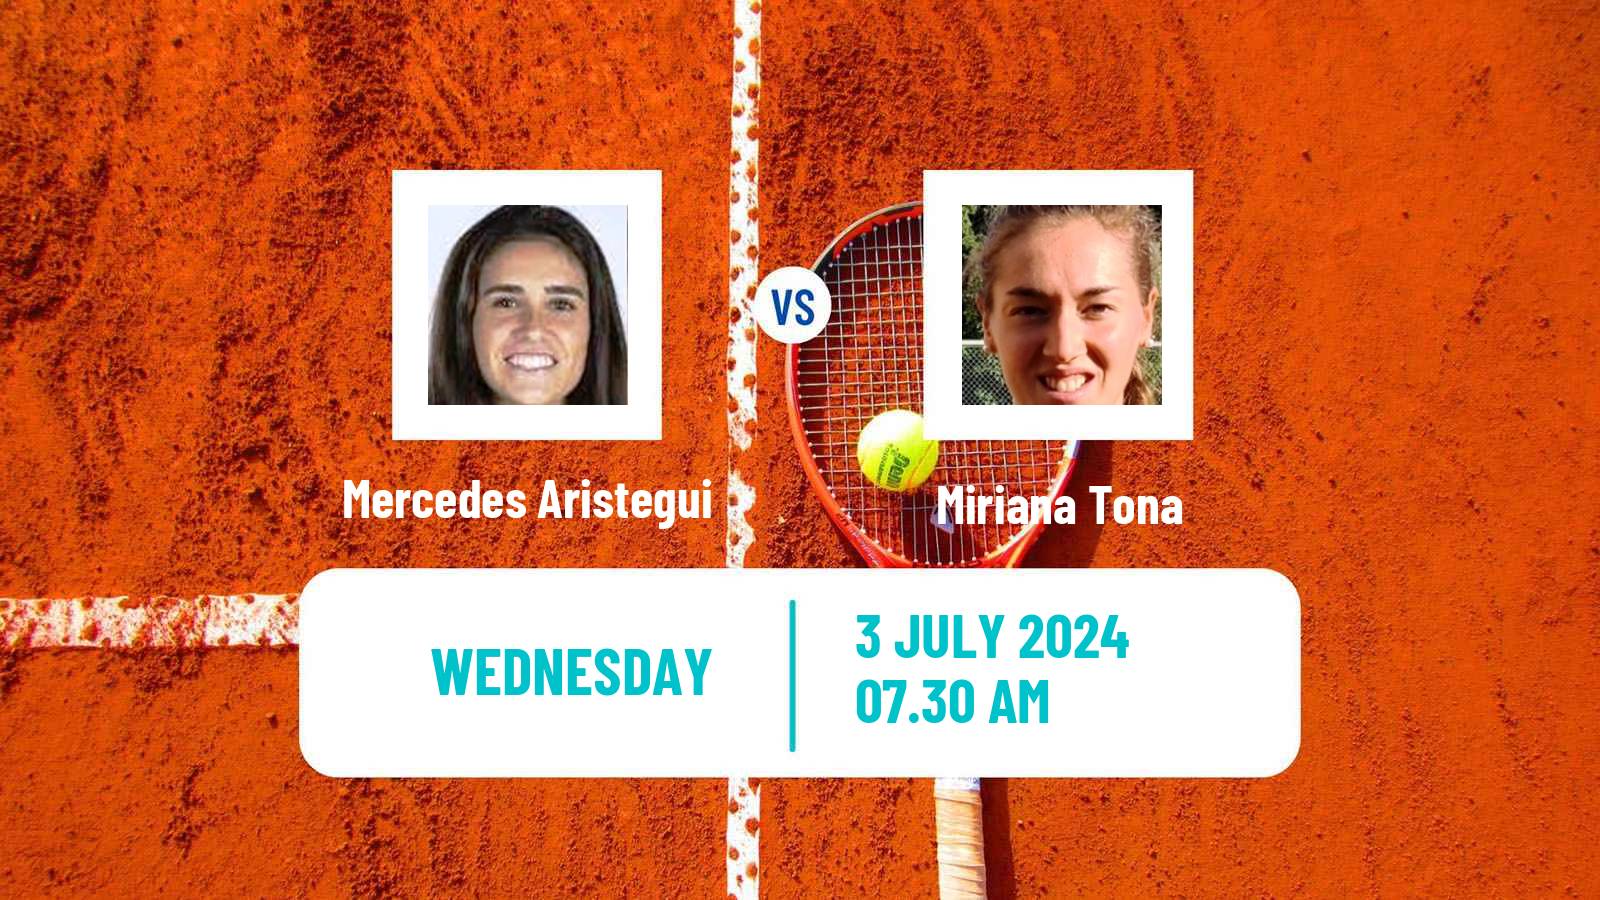 Tennis ITF W35 Getxo Women Mercedes Aristegui - Miriana Tona